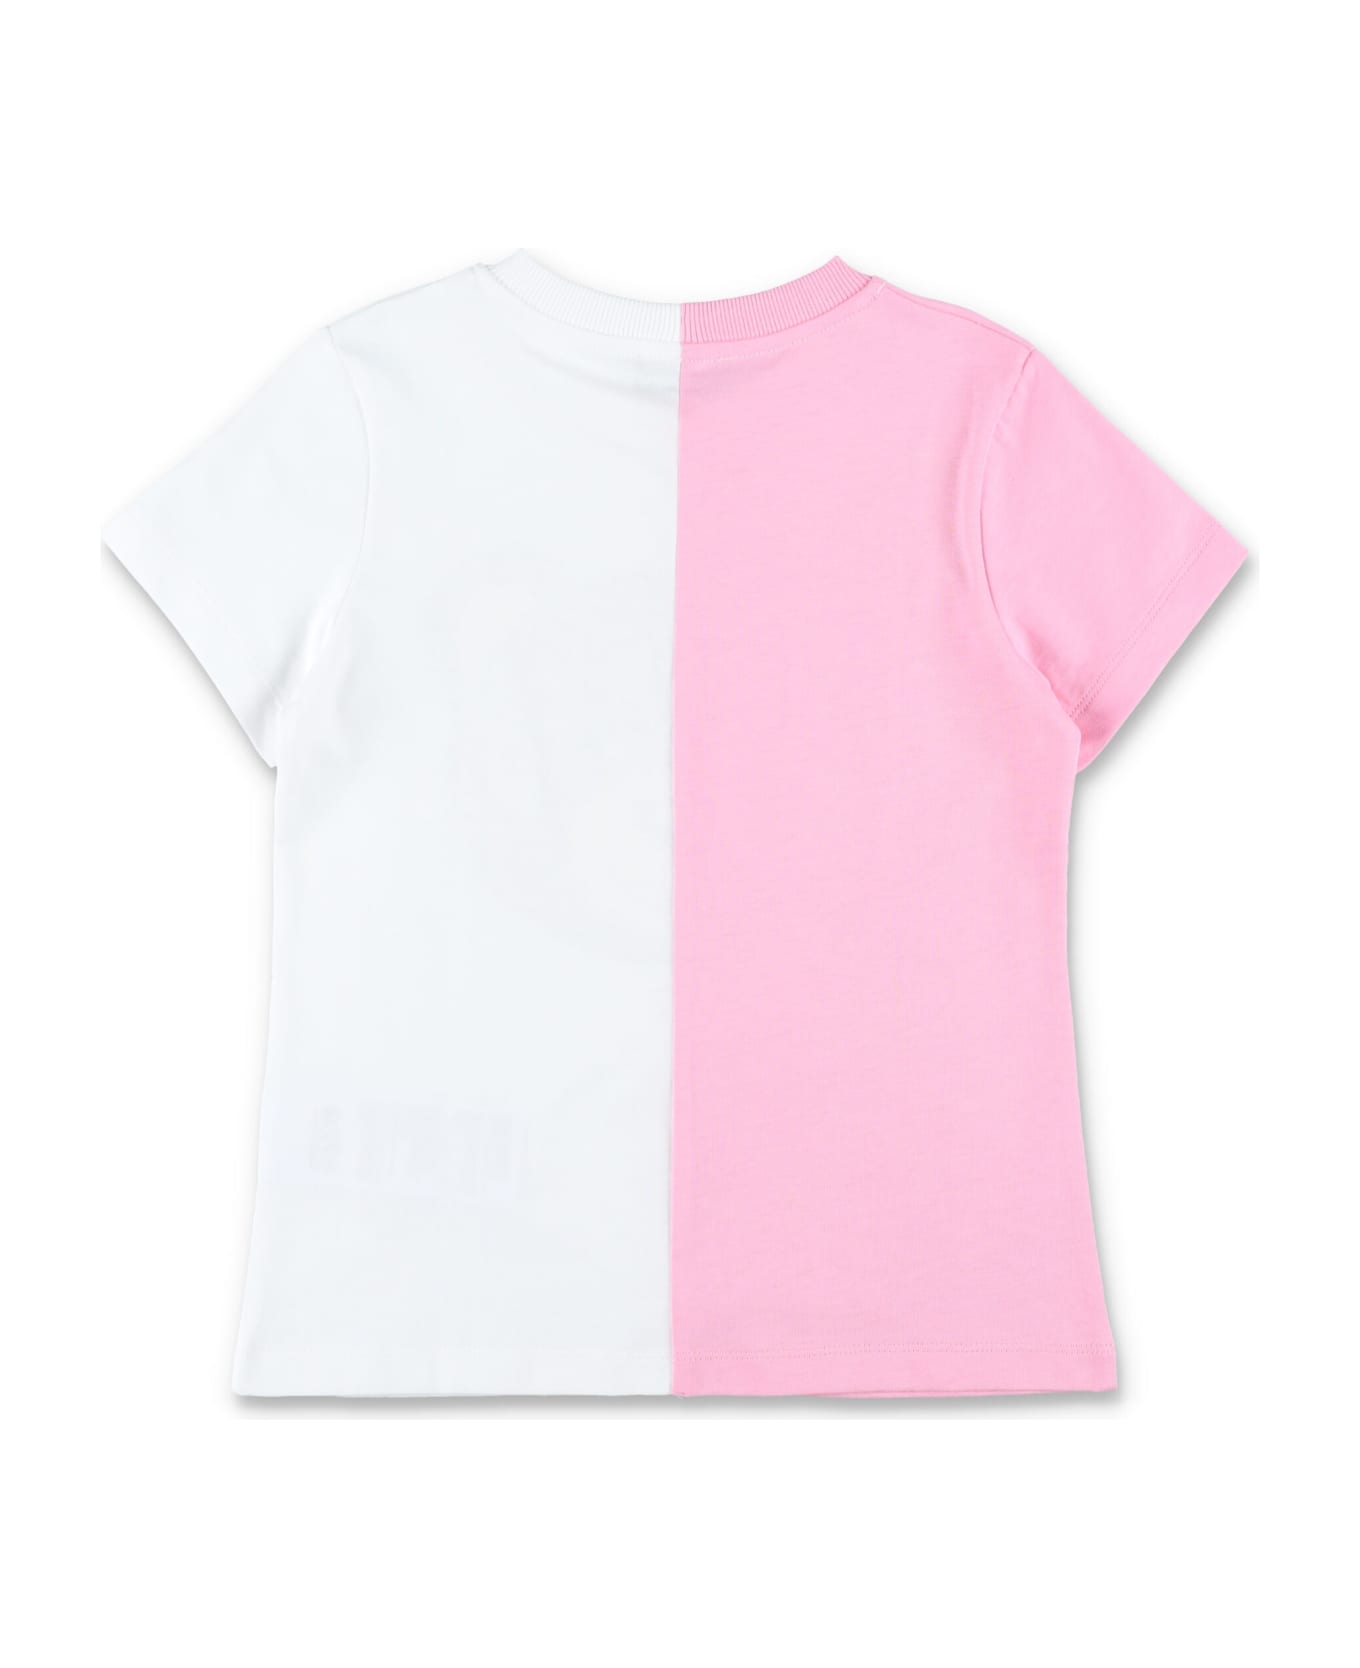 Moschino Bear T-shirt - WHITE